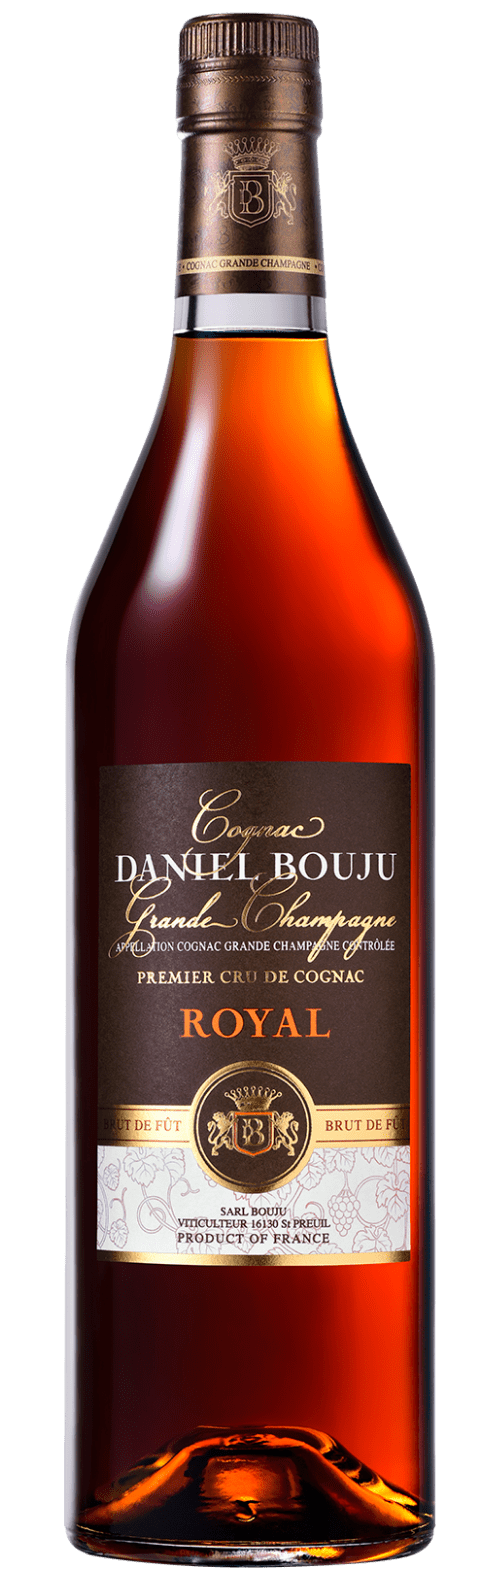 Royal Cognac Grande Champagne A.C.C. 